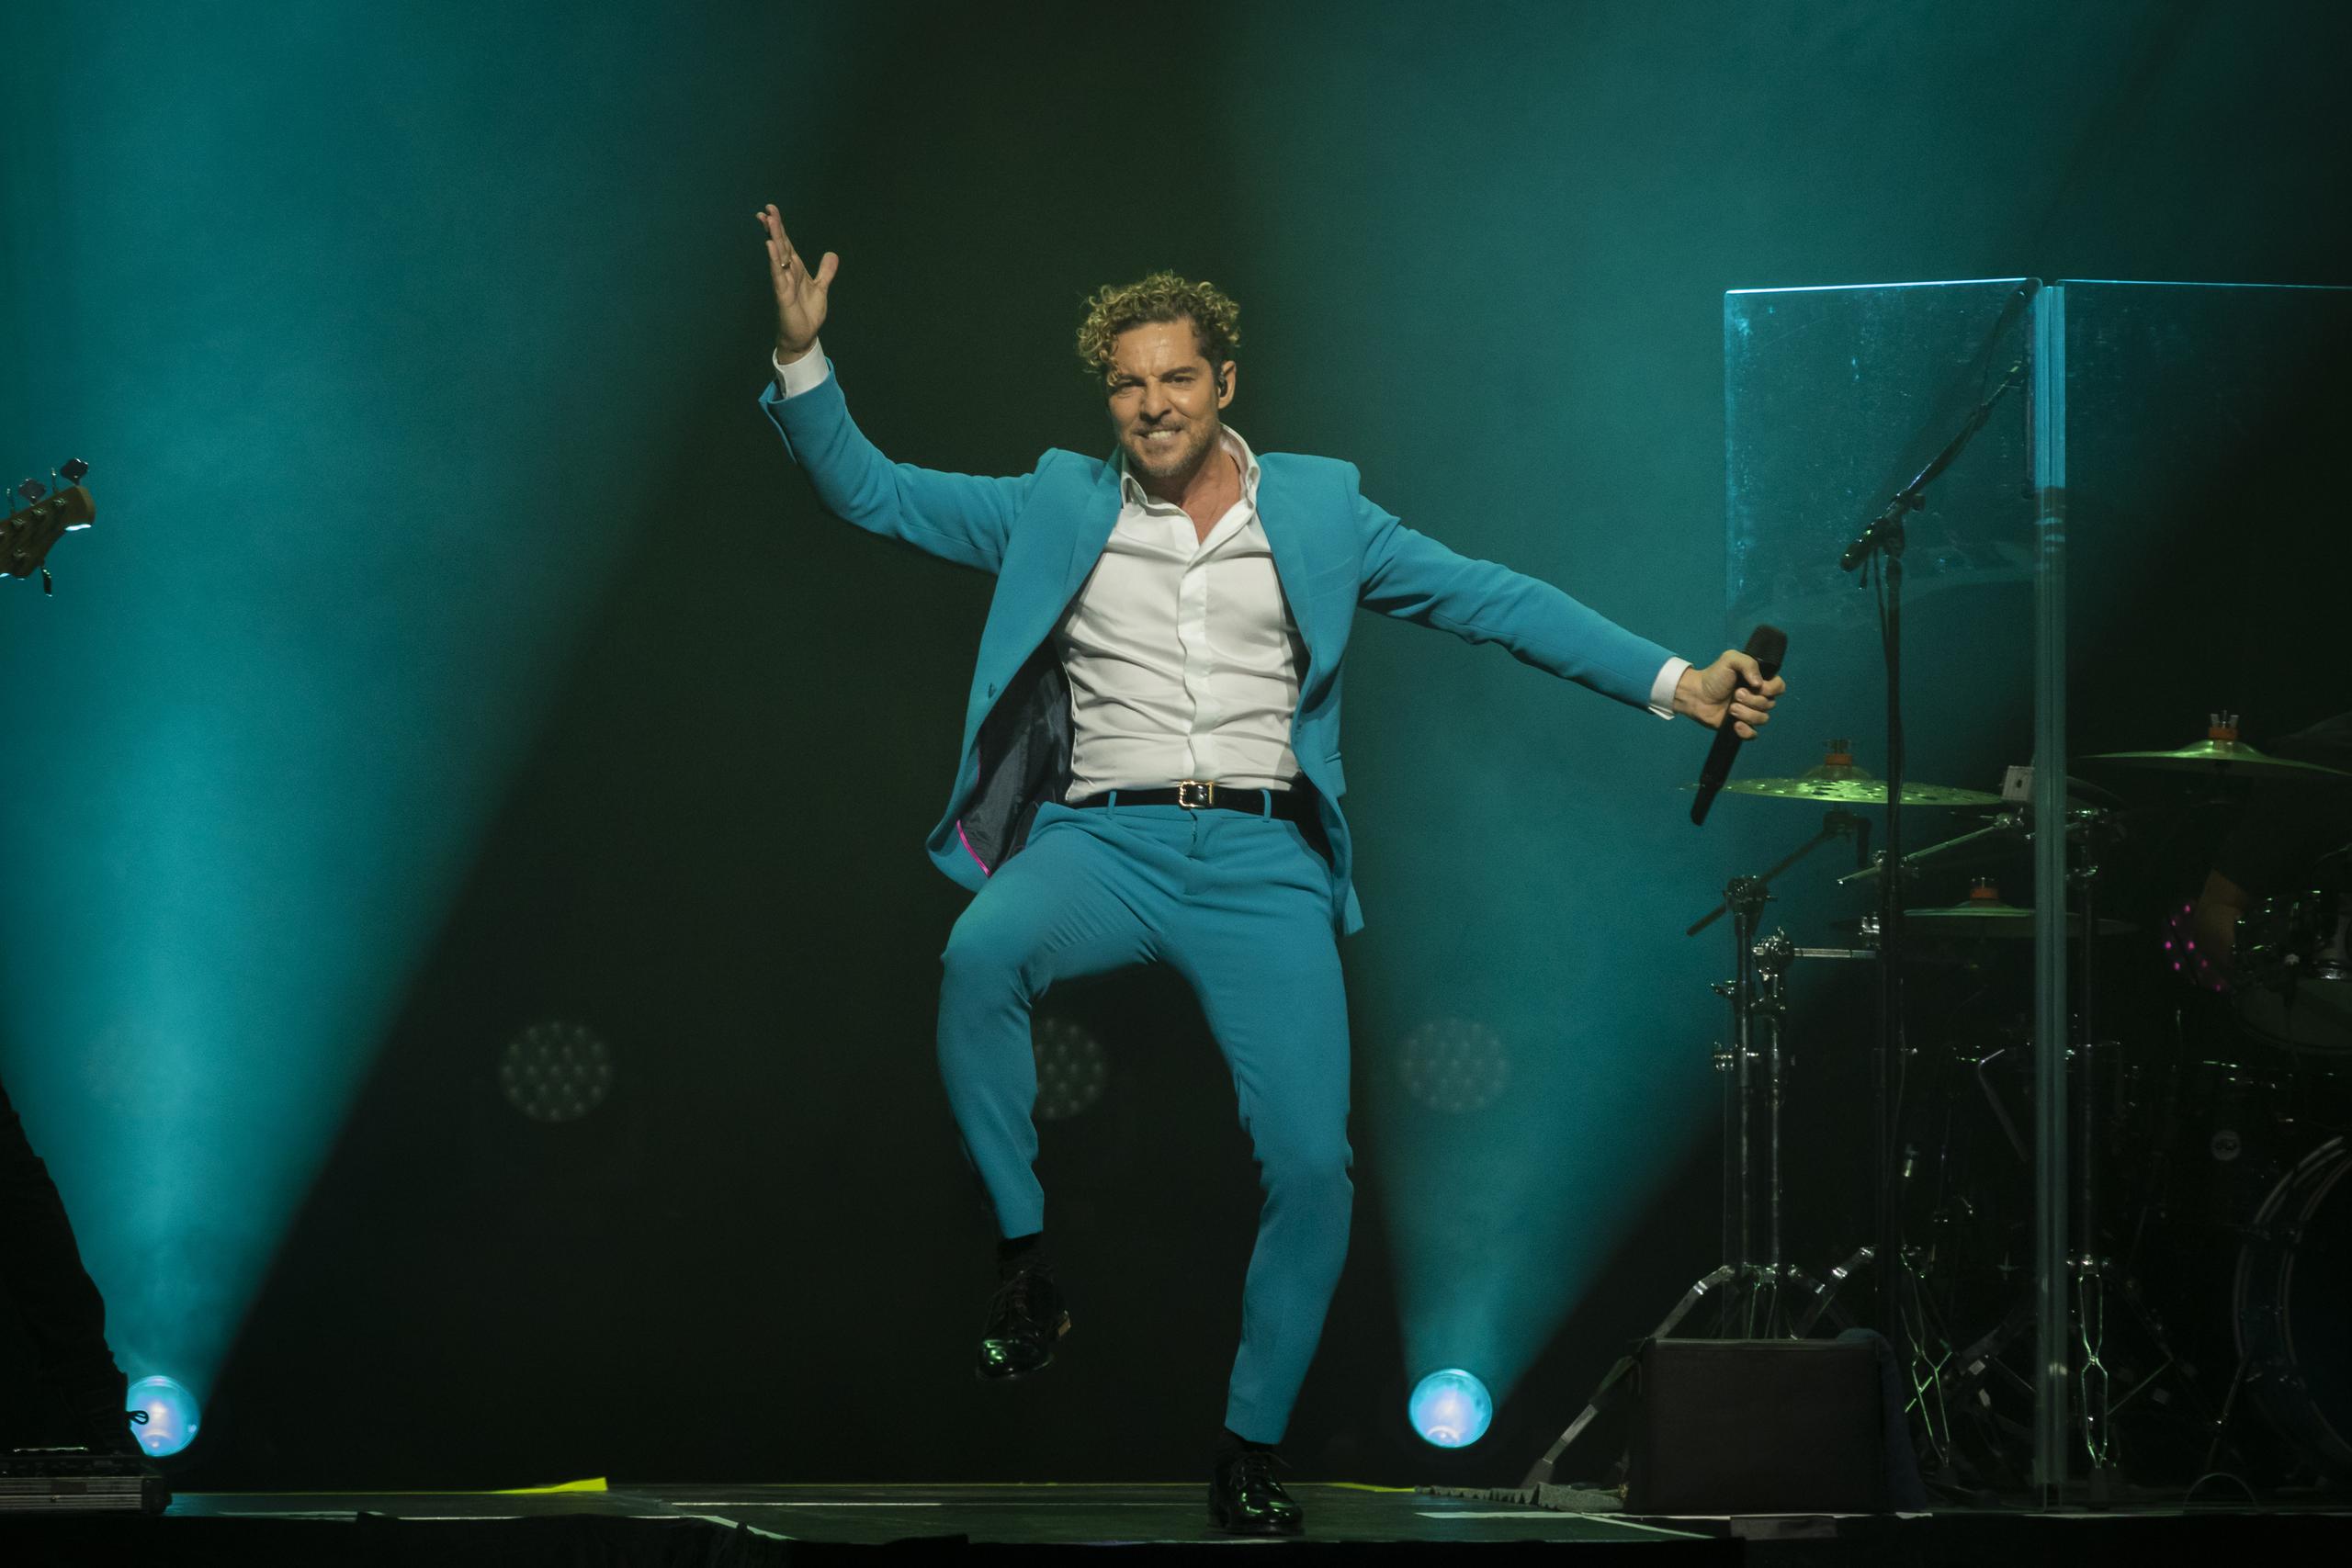 Un escenario sencillo fue suficiente para que el artista se luciera como el único elemento de color, al estar vestido con una chaqueta y pantalón a juego en tono azul turquesa en la primera parte del espectáculo.